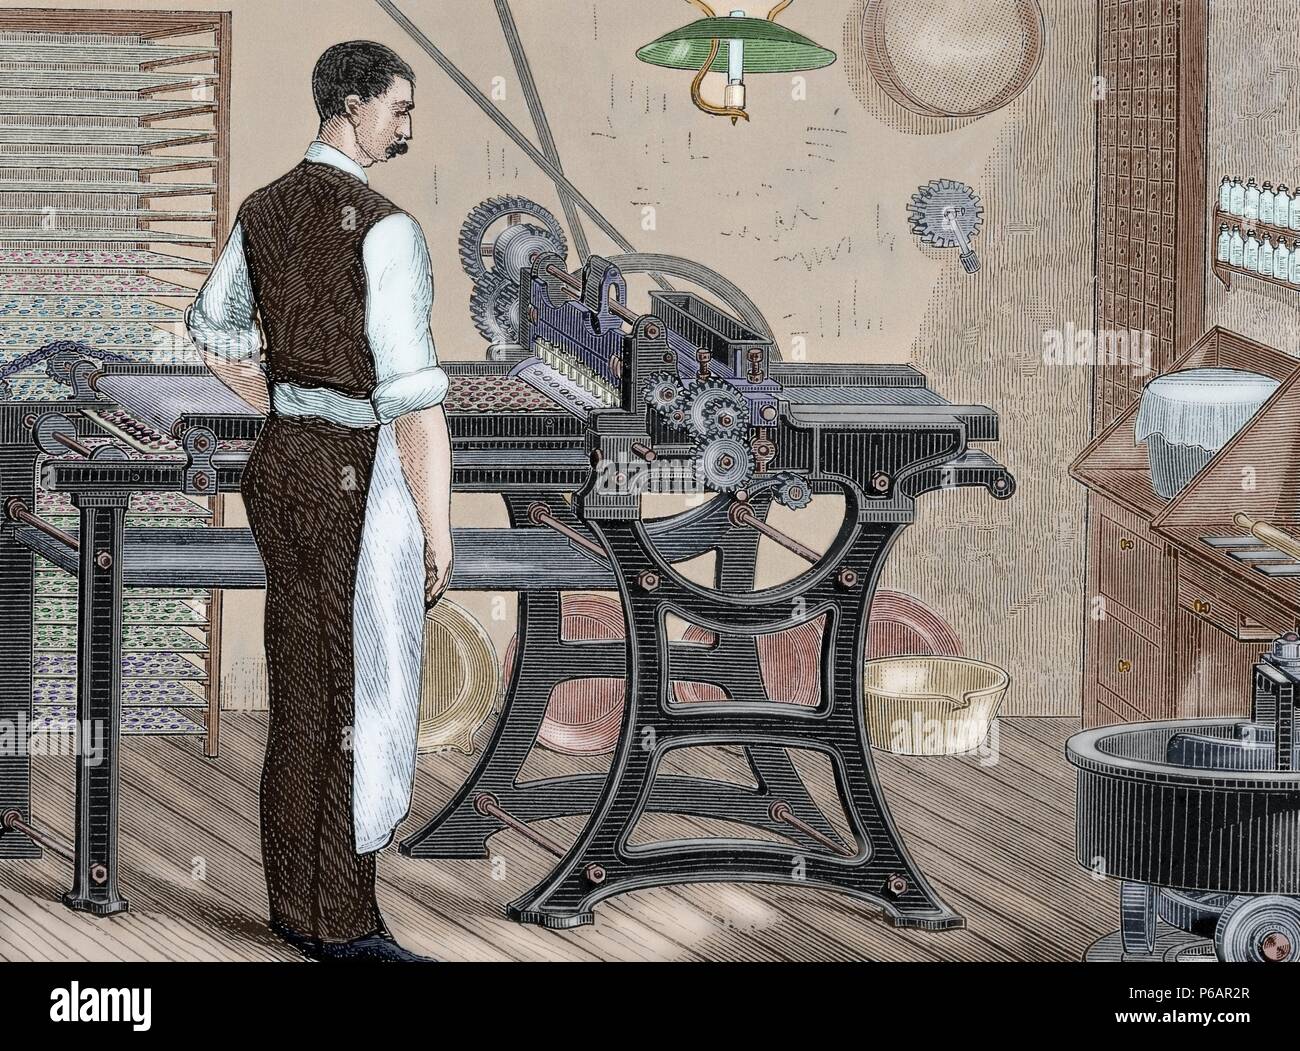 Histoire de la médecine. Des machines. Etuyage de pilules. La gravure. 19e siècle. De couleur. Banque D'Images